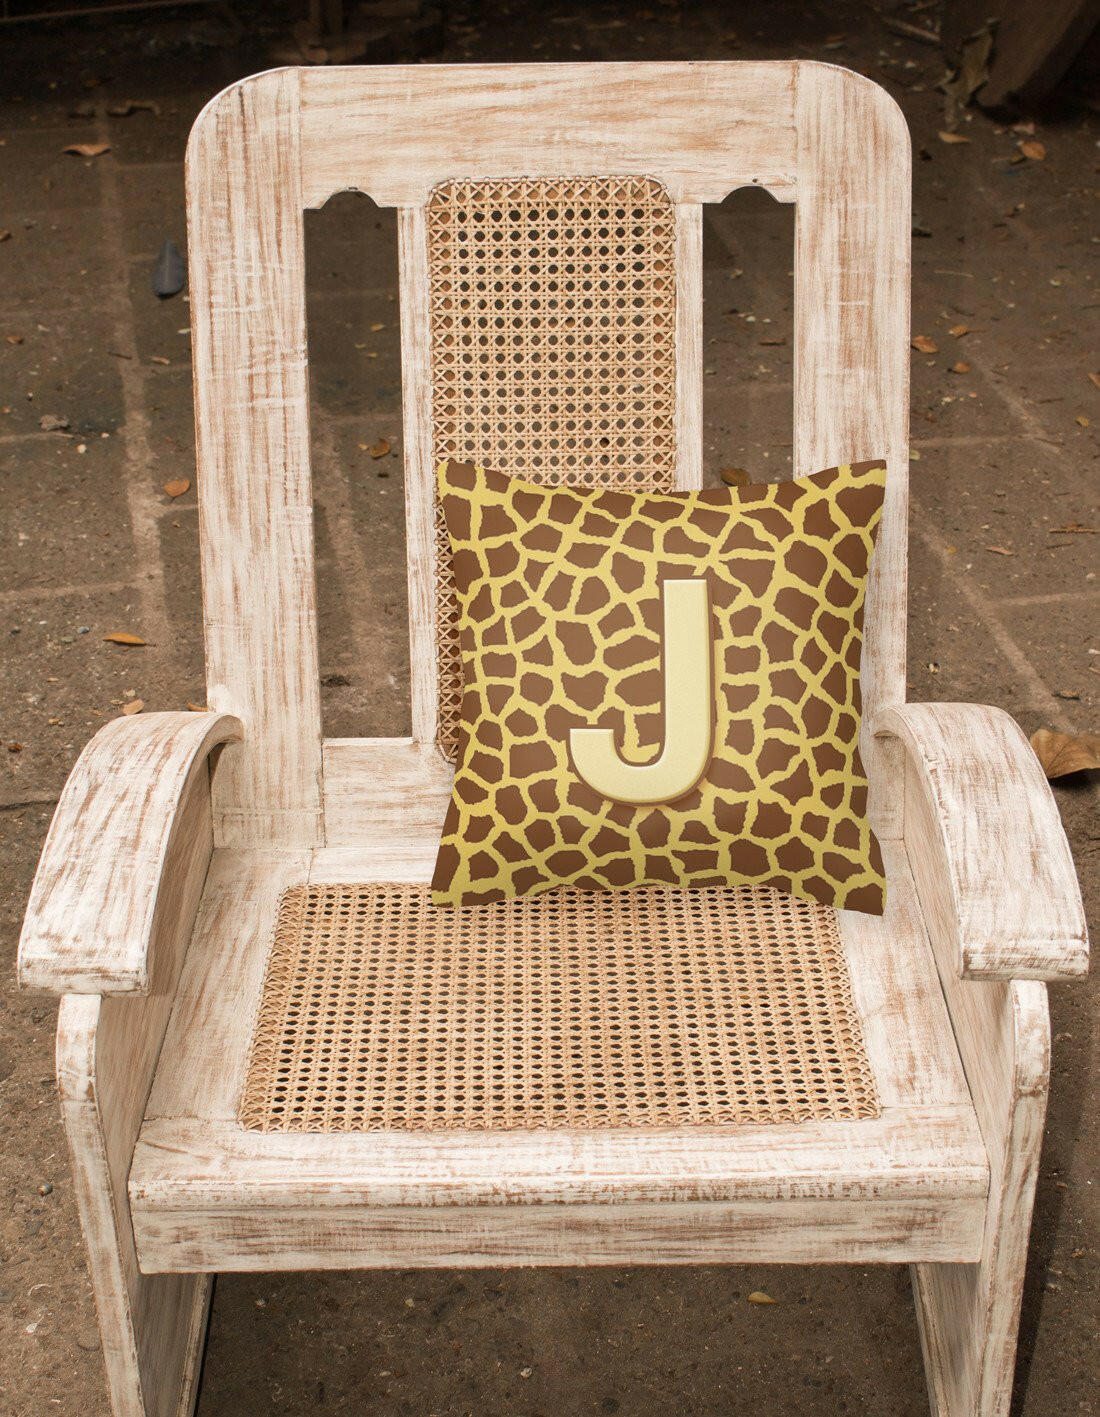 Monogram Initial J Giraffe Decorative   Canvas Fabric Pillow CJ1025 - the-store.com